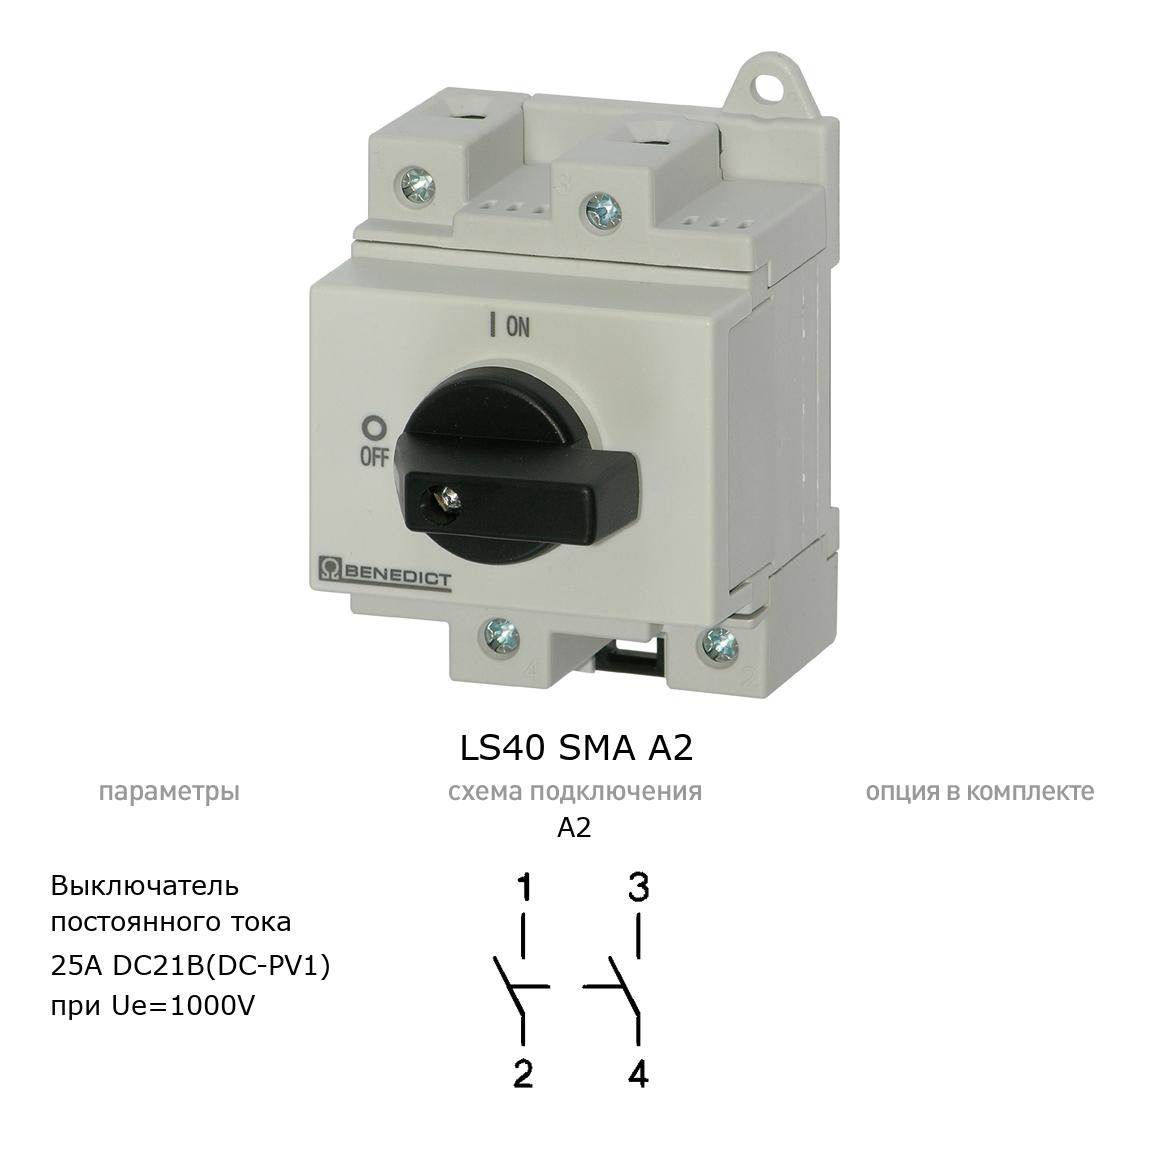 Кулачковый переключатель для постоянного тока (DC) LS40 SMA A2 BENEDICT